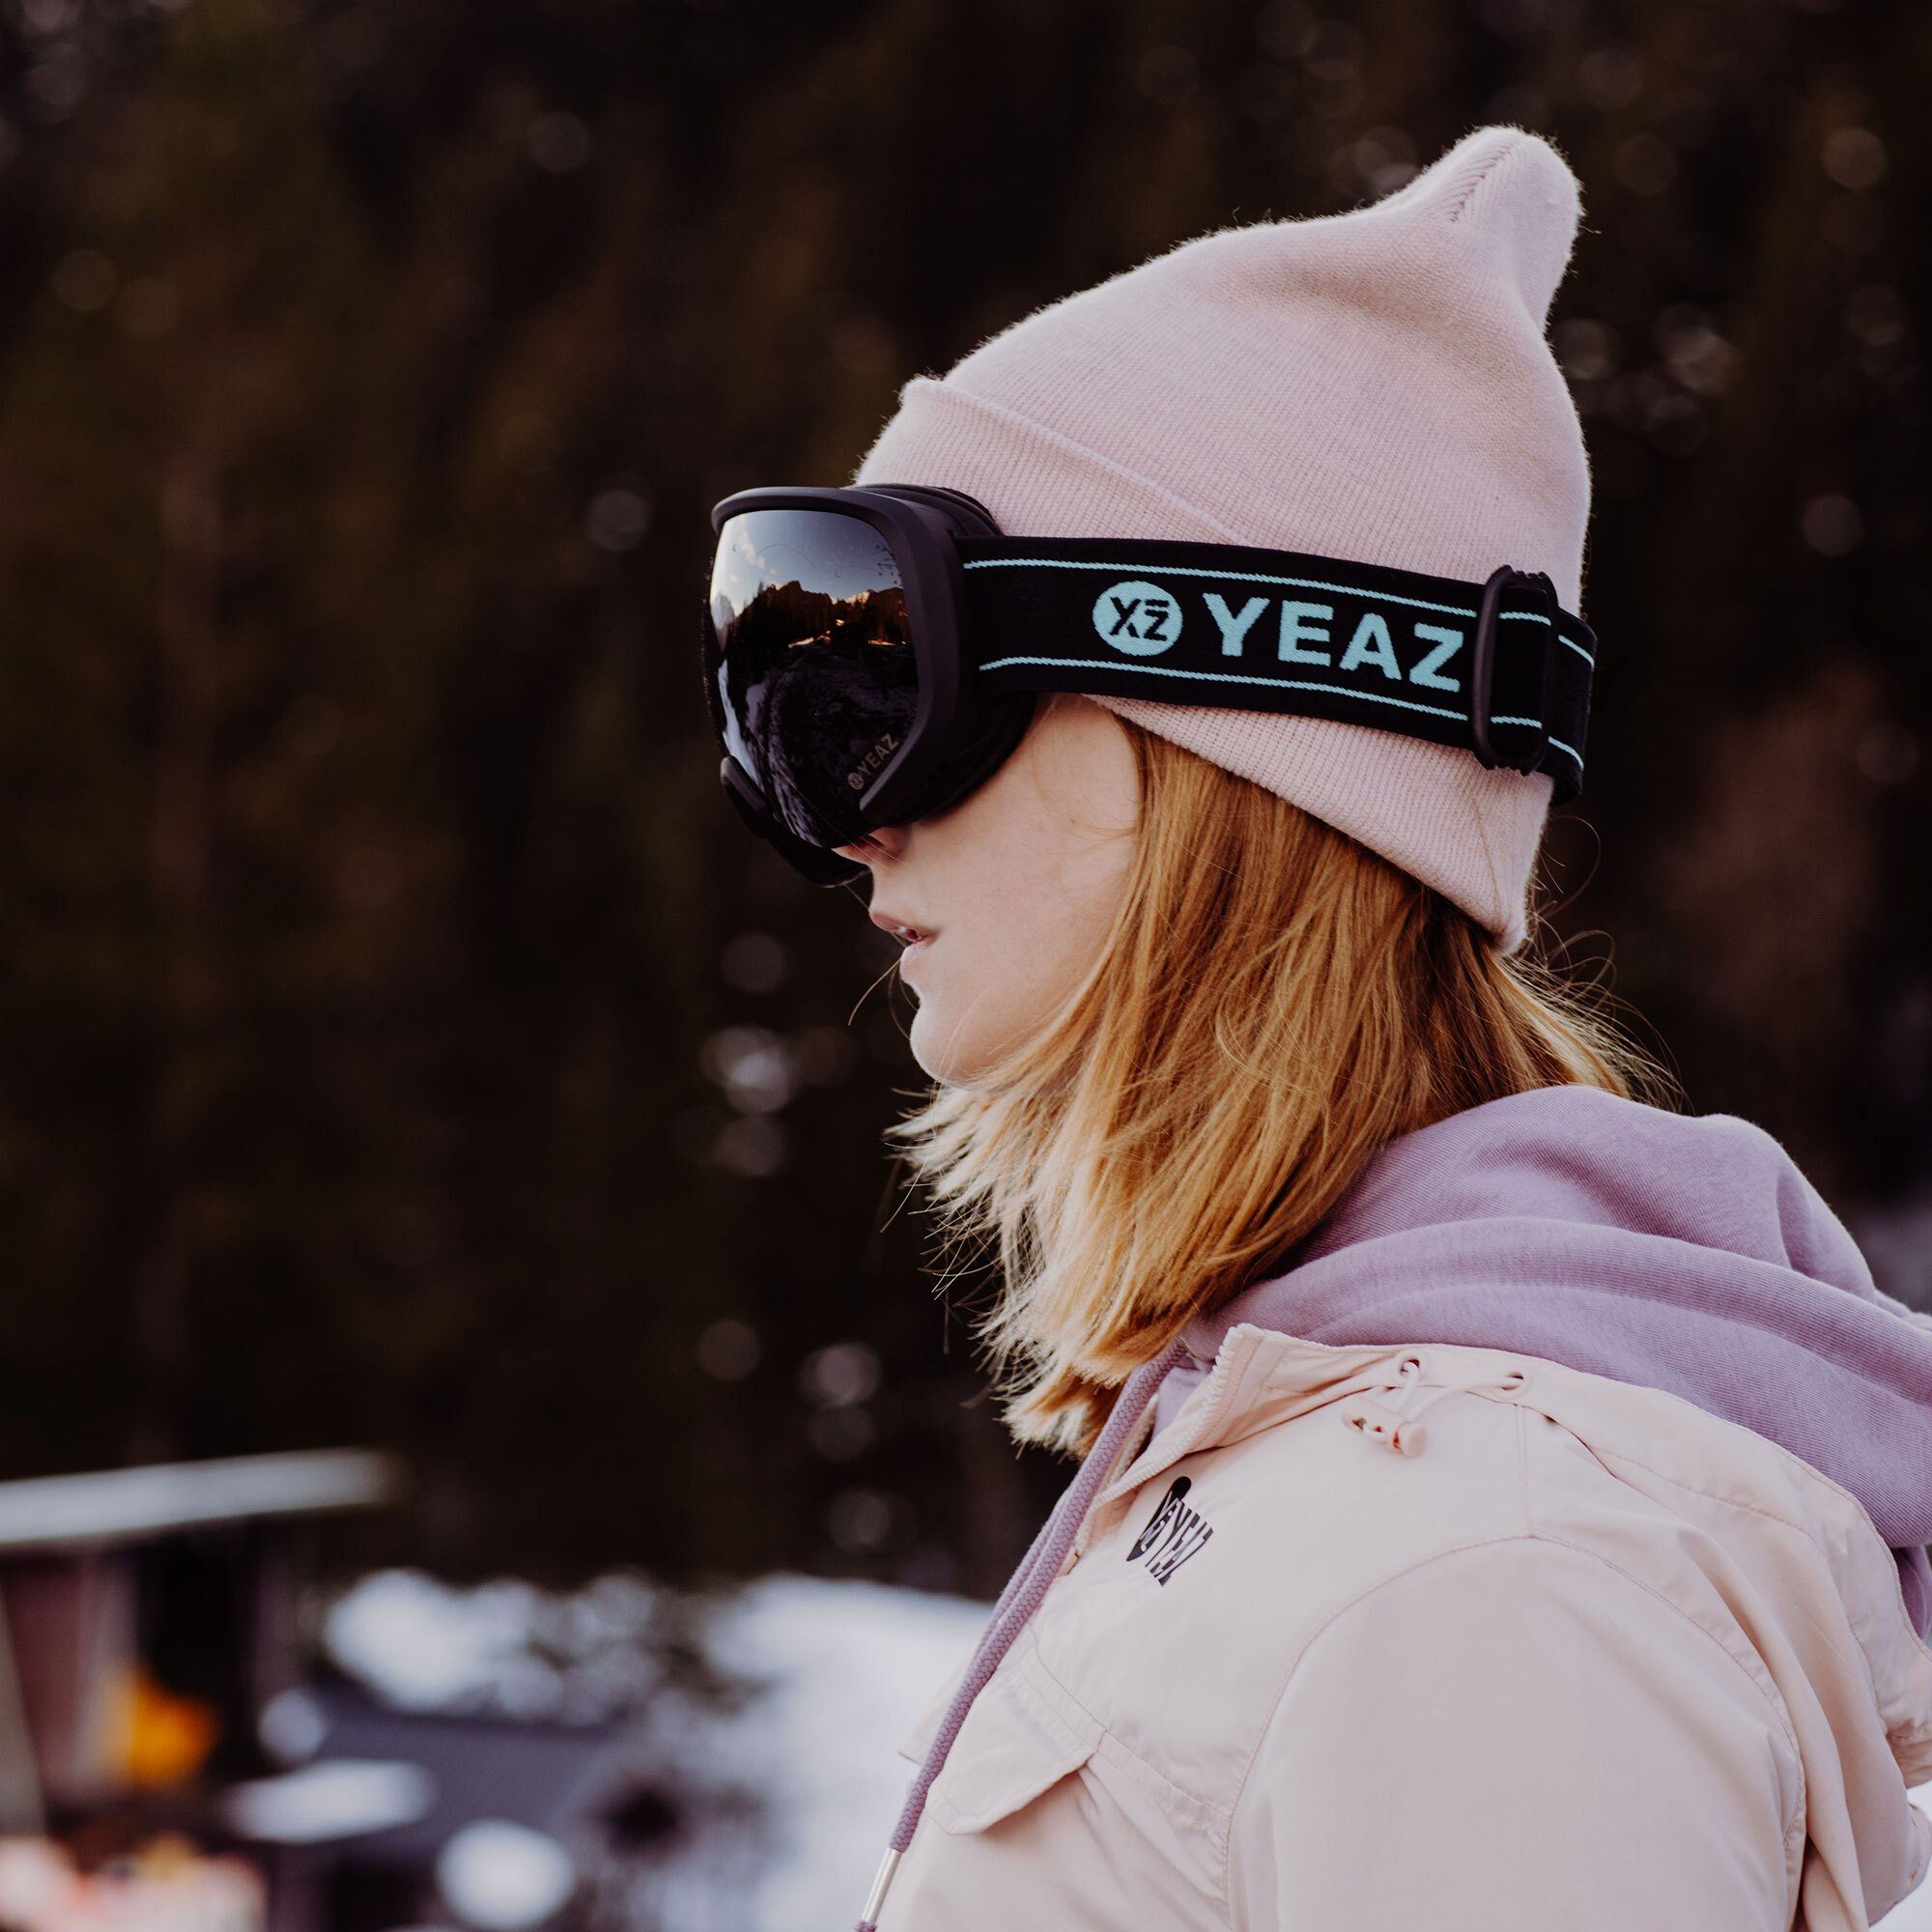 YEAZ Skibrille BLACK RUN, Premium-Ski- und und Snowboardbrille für Erwachsene Jugendliche